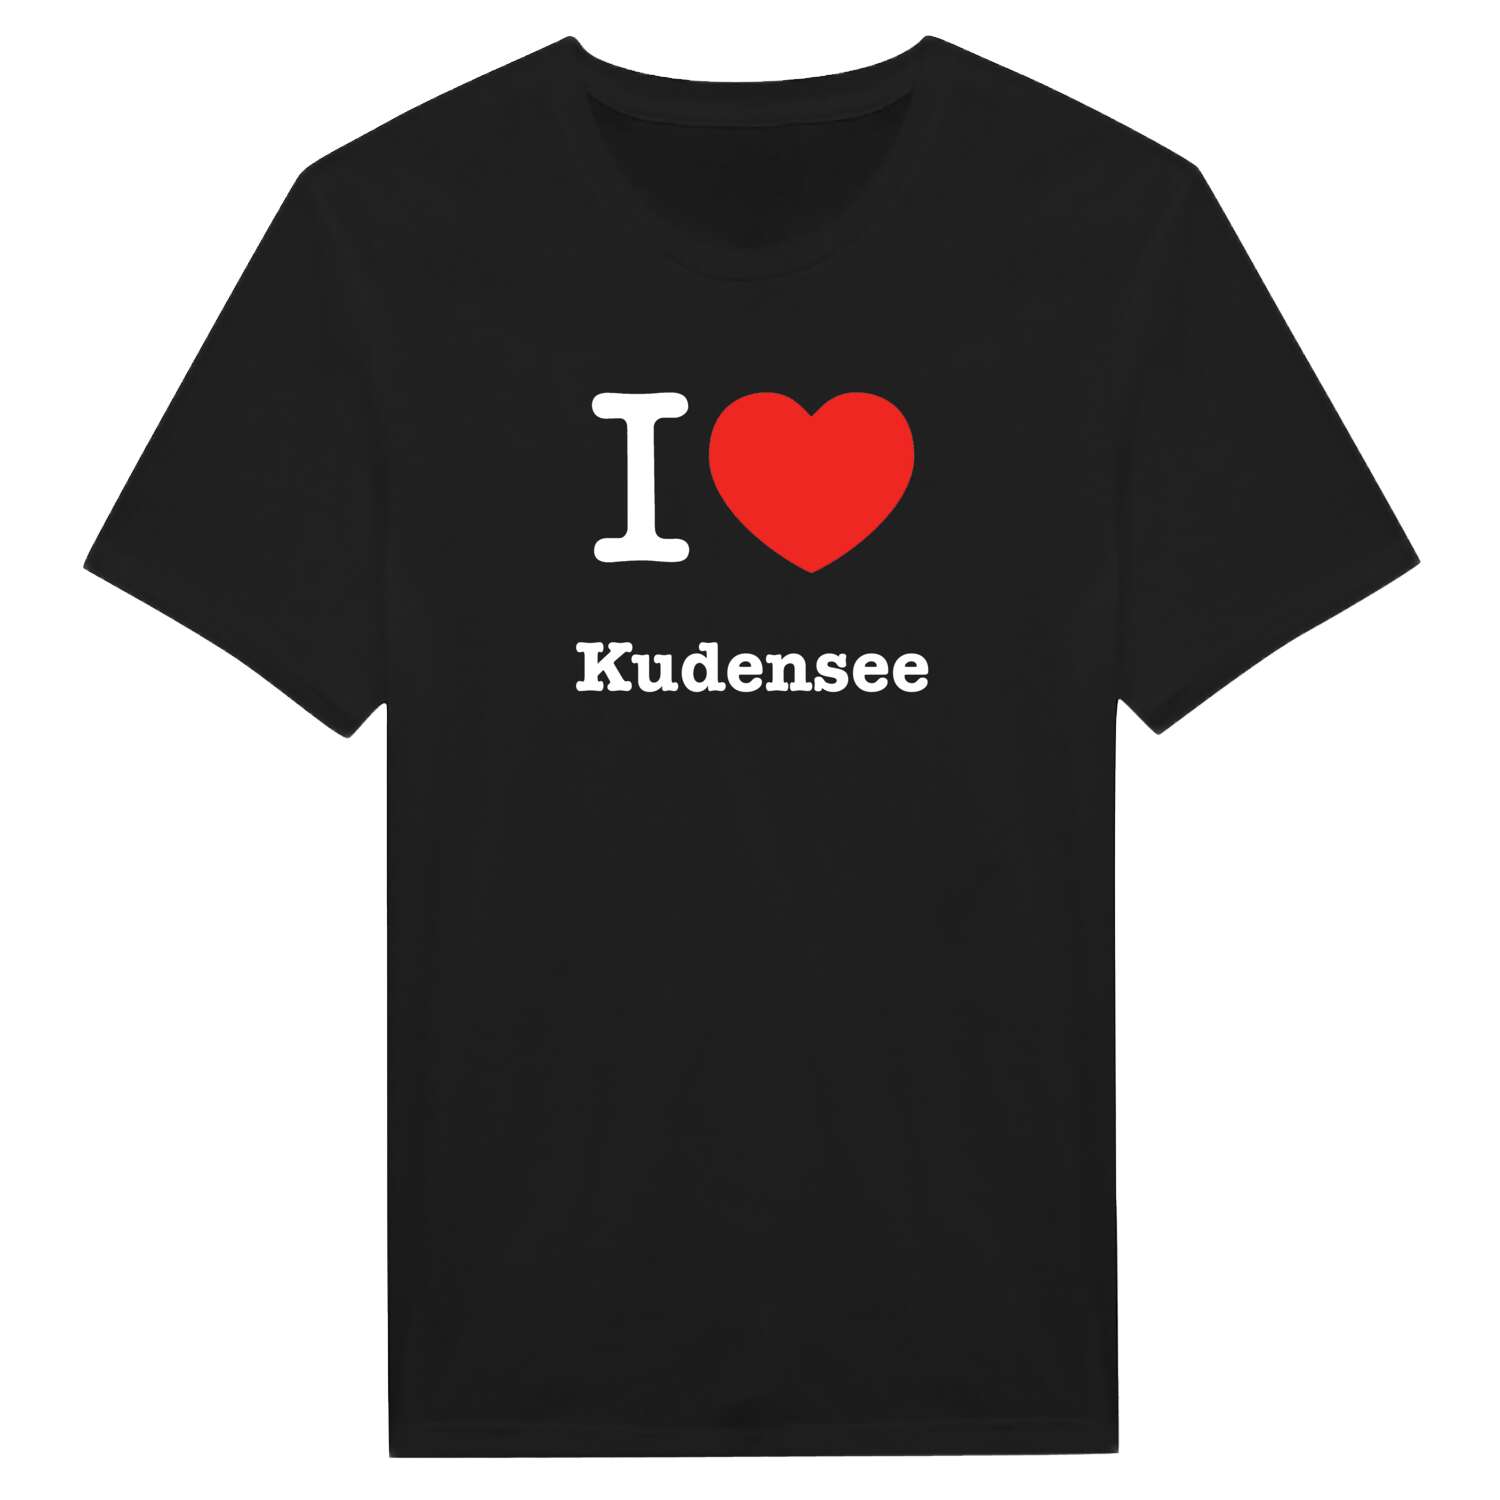 Kudensee T-Shirt »I love«